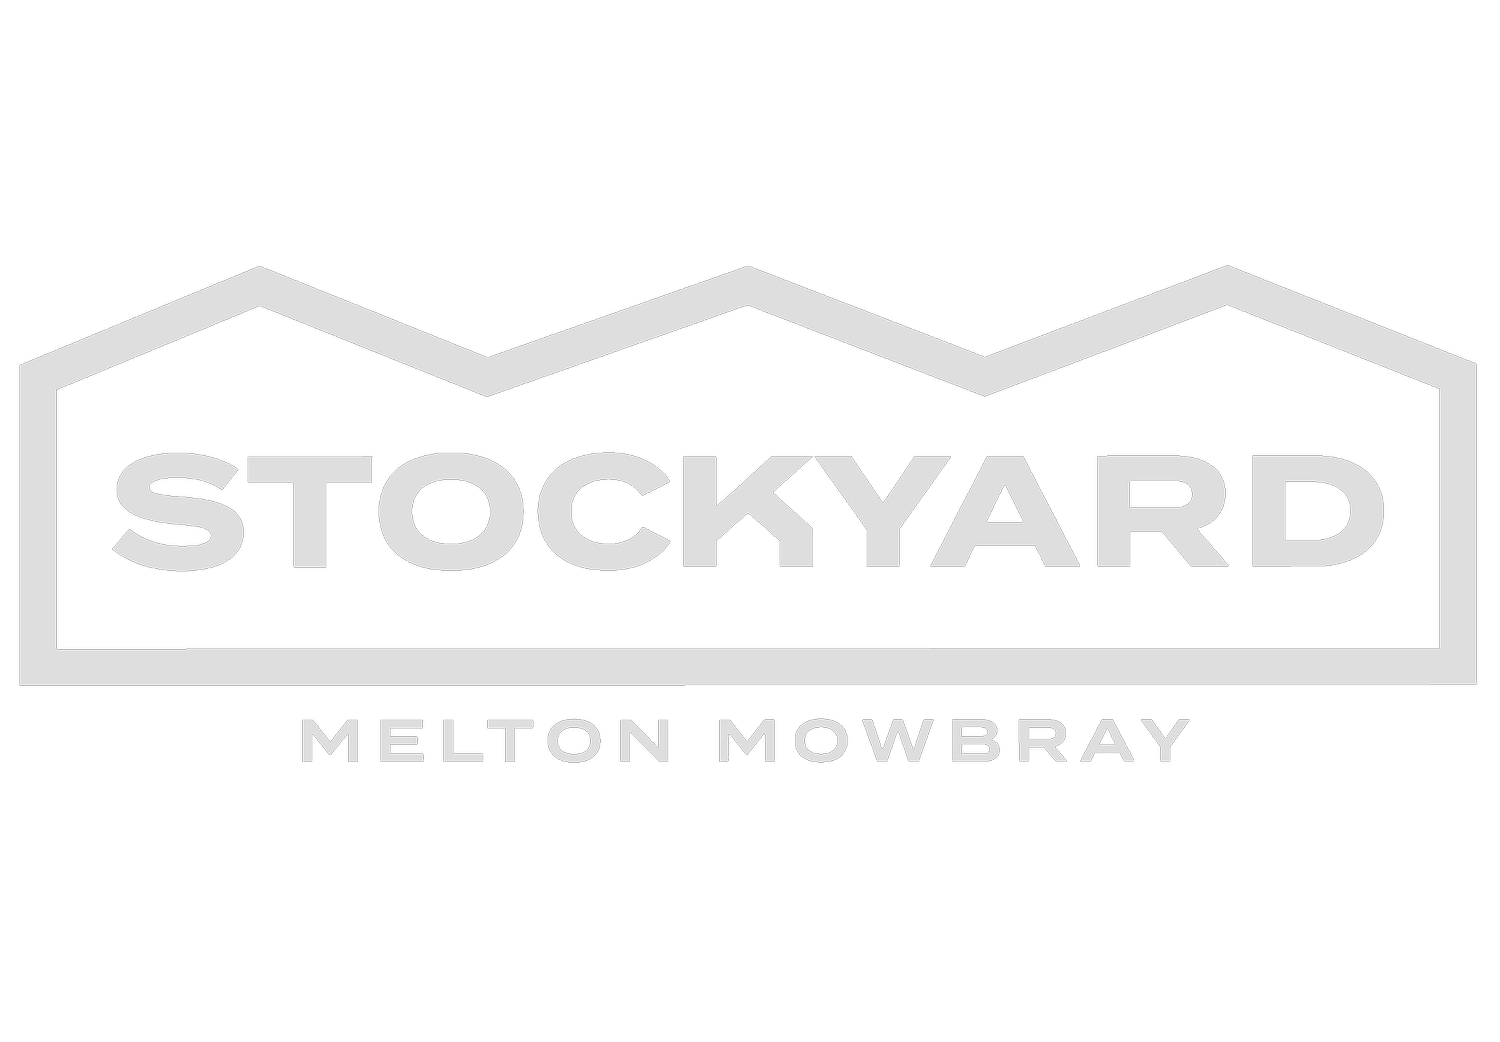 Stockyard - Melton Mowbray